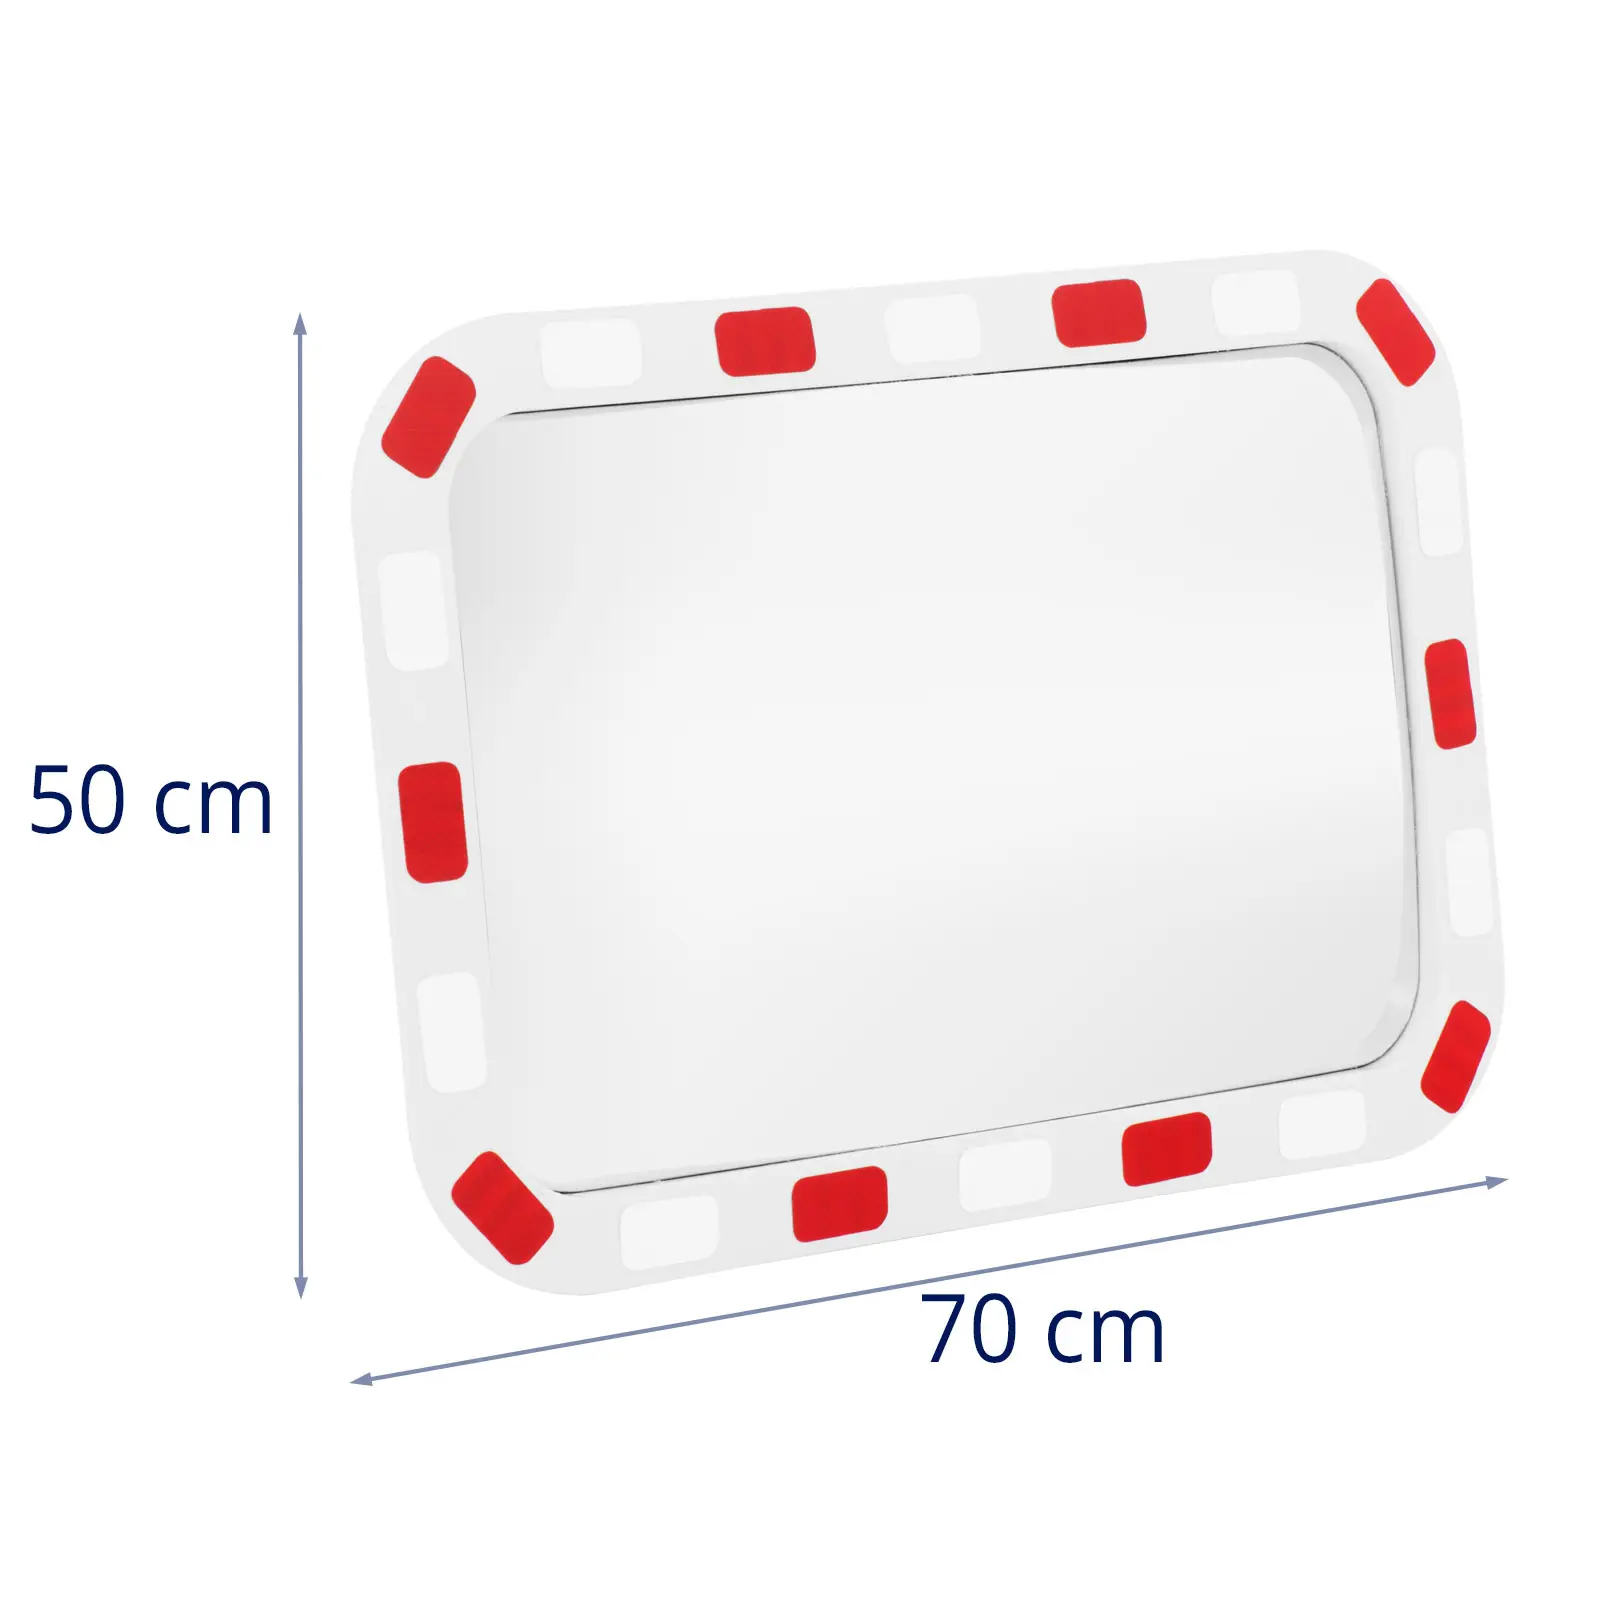 Trafikspegel - 40 x 80 x 8 cm - 130° - Rektangulär